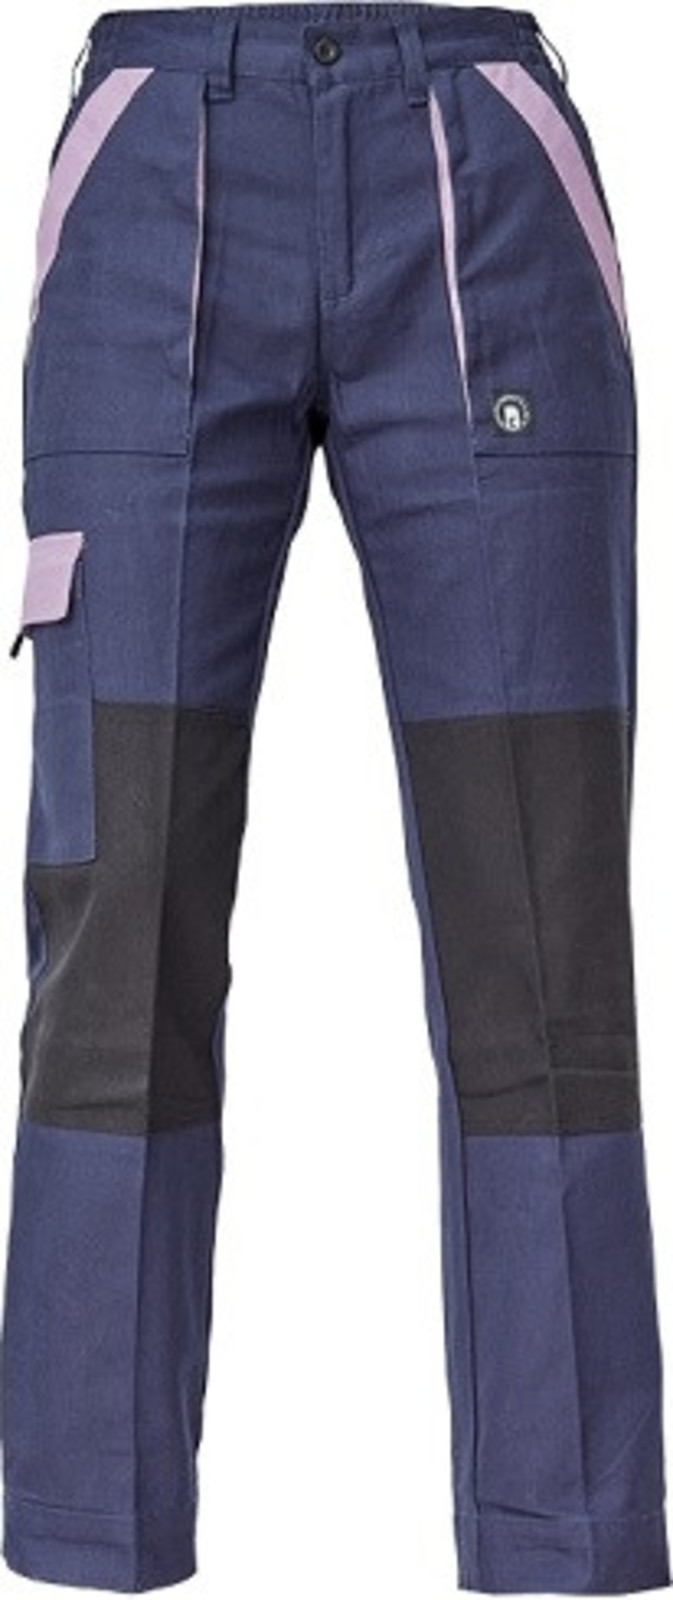 Dámske bavlnené montérky Cerva Max Neo Lady - veľkosť: 54, farba: navy/fialová